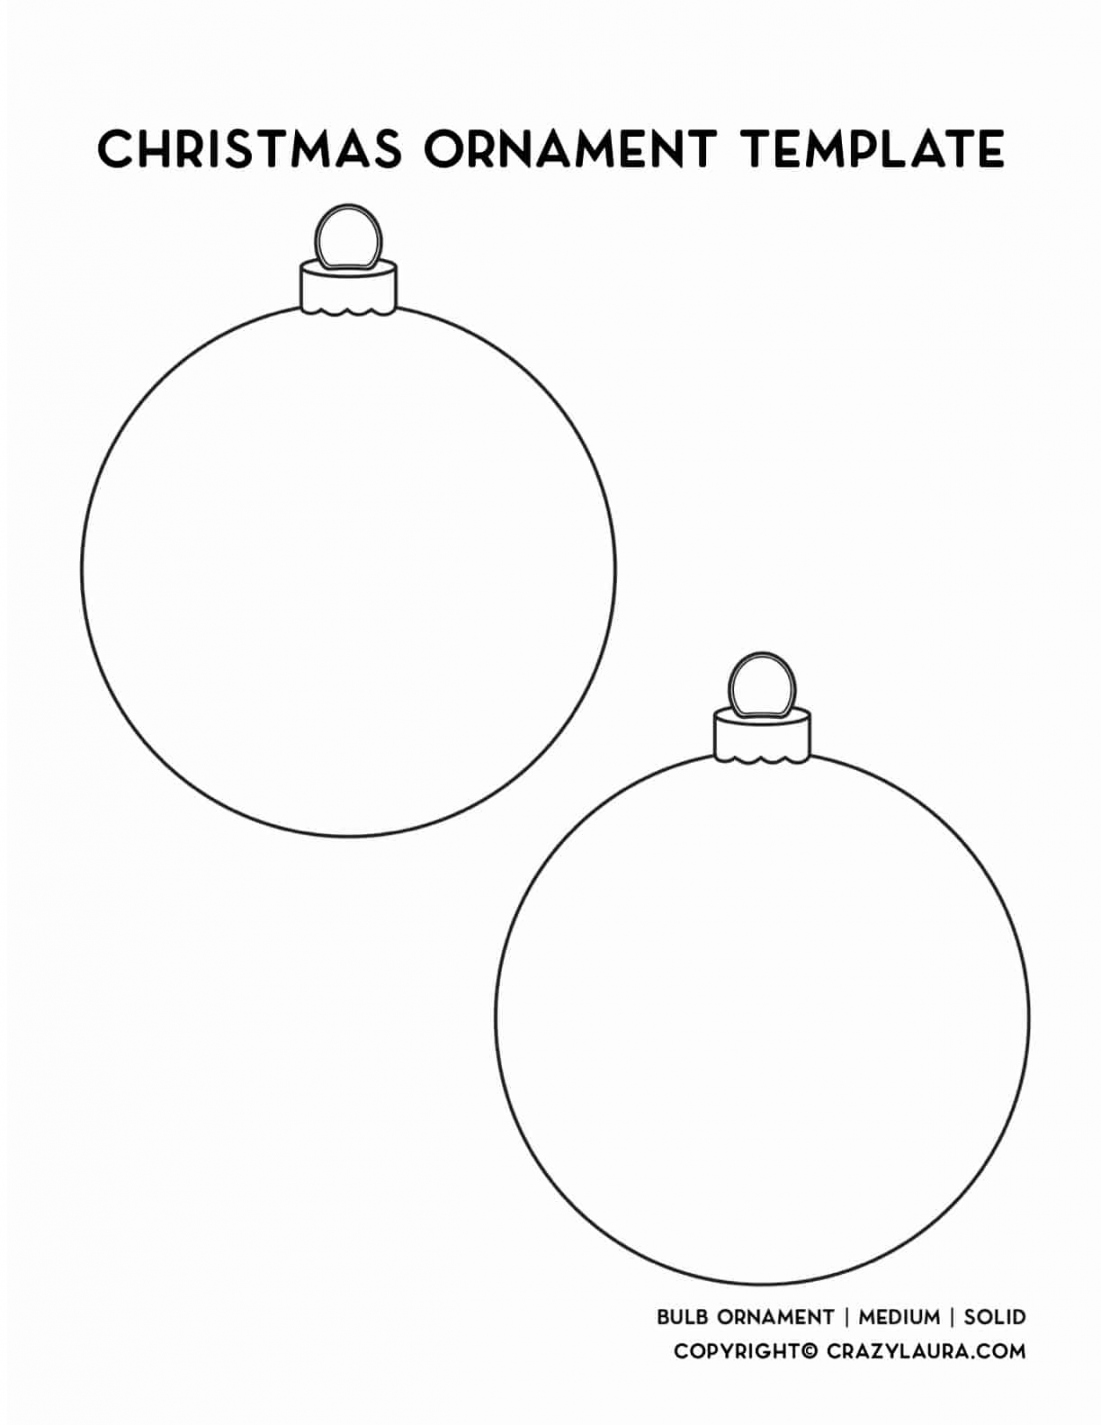 Free Christmas Ornament Template Printables & Outlines - Crazy Laura - FREE Printables - Ornament Template Printable